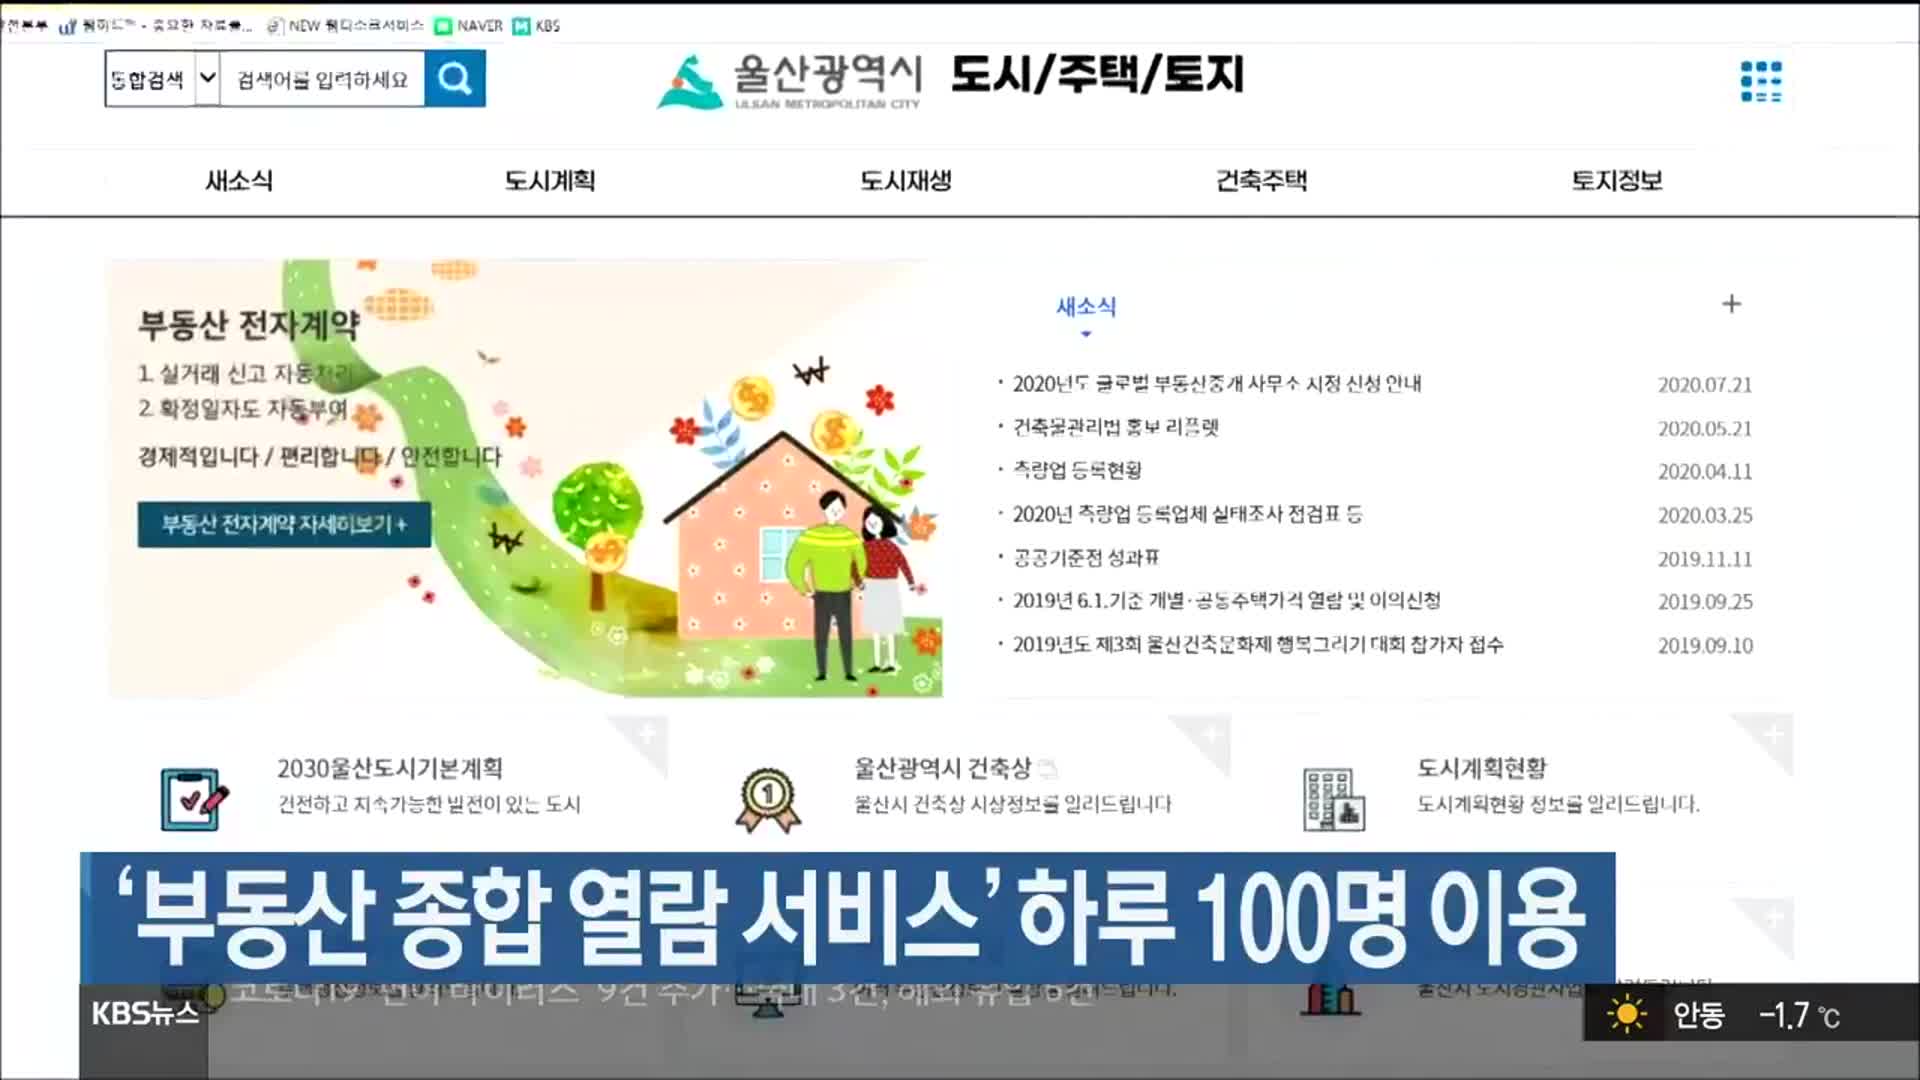 ‘부동산 종합 열람 서비스’ 하루 100명 이용